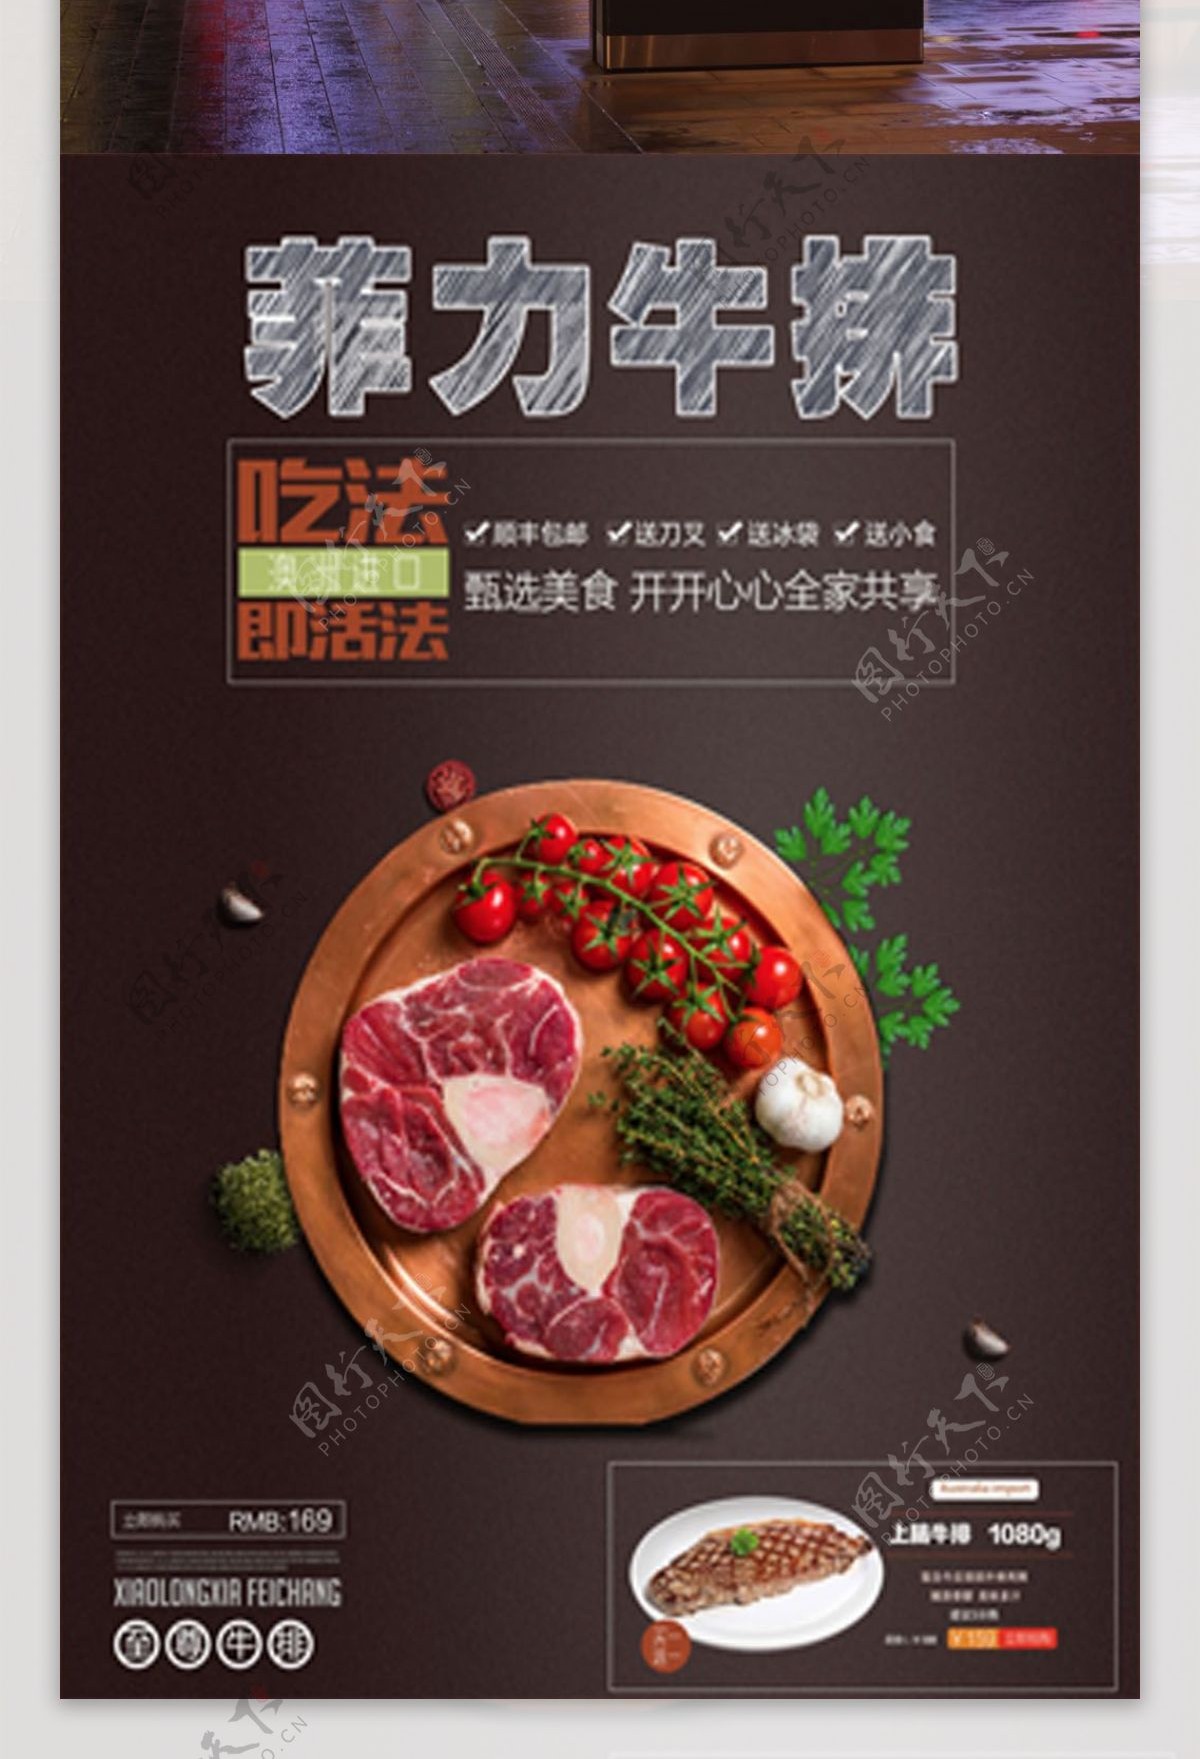 菲力牛排美食海报设计